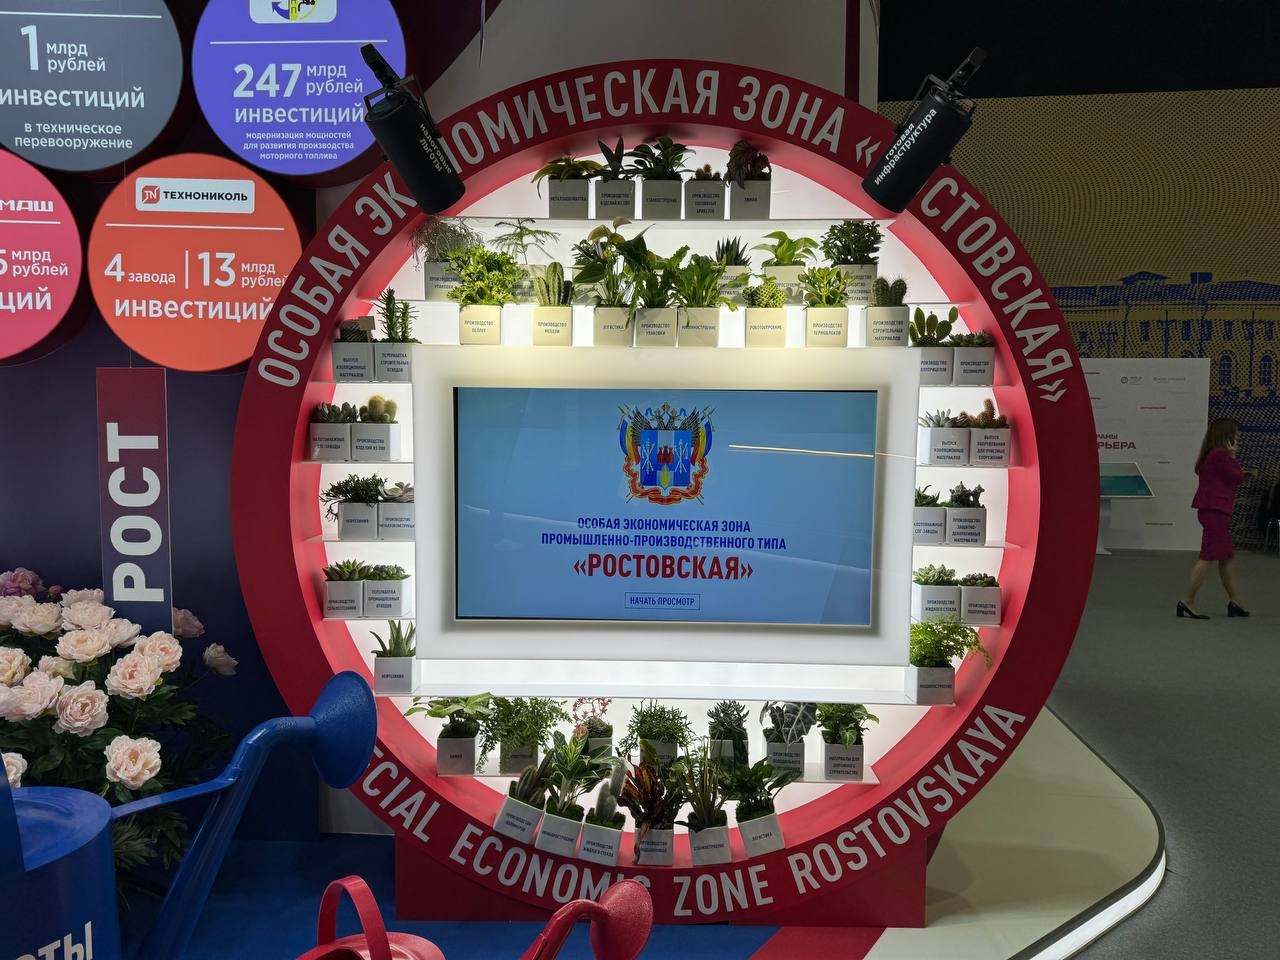 Компания "Элмика" на территории особой экономической зоны (ОЭЗ) "Ростовская" реализует импортозамещающий проект. Фото